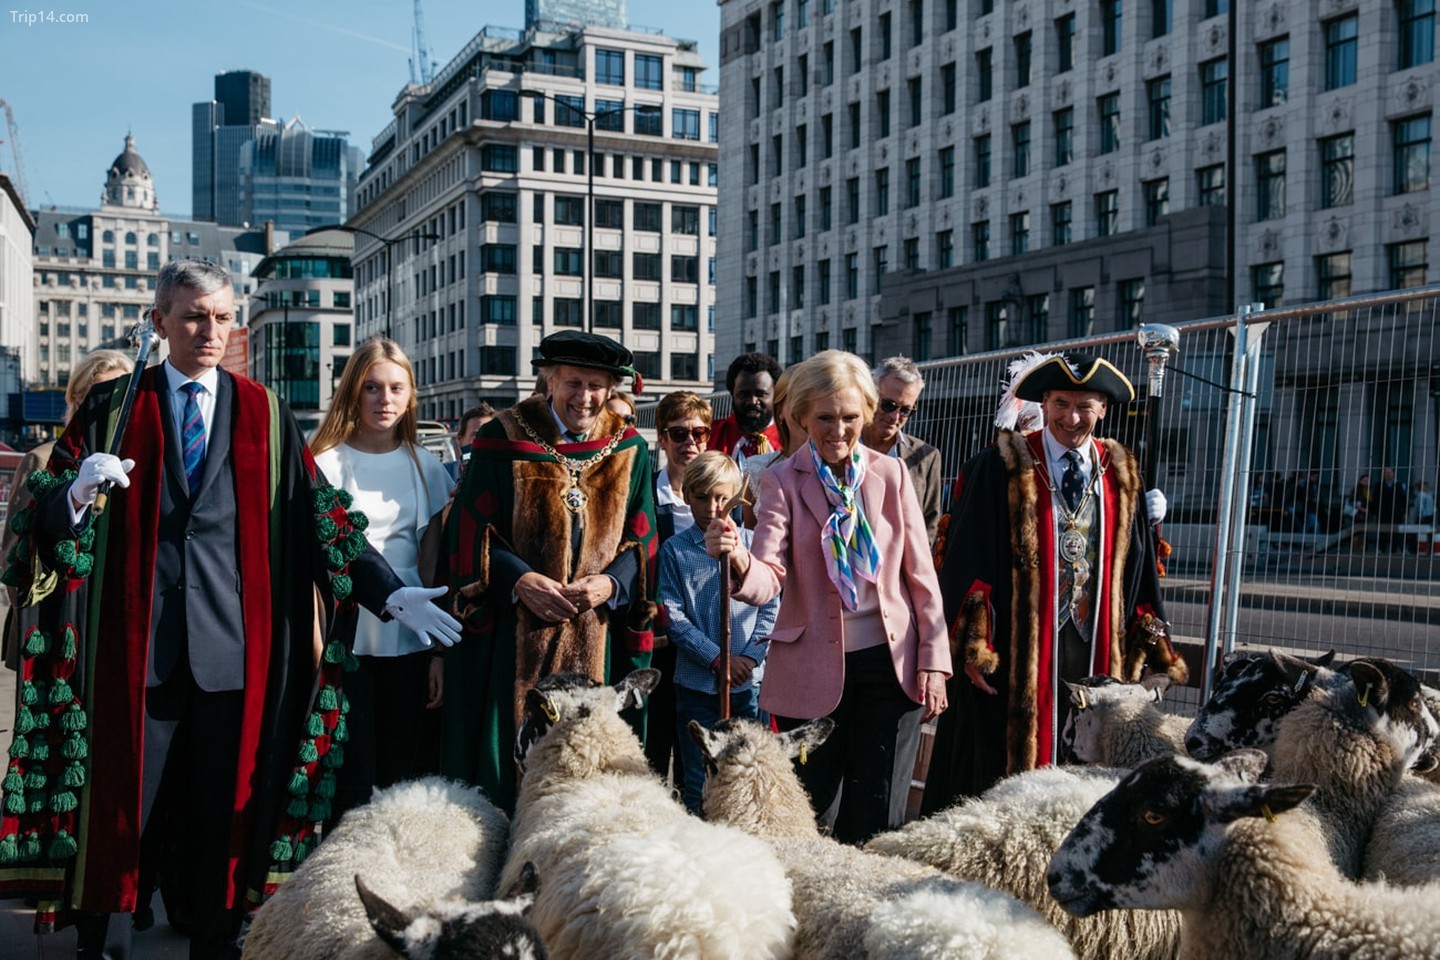 Ổ cừu hàng năm qua cầu London